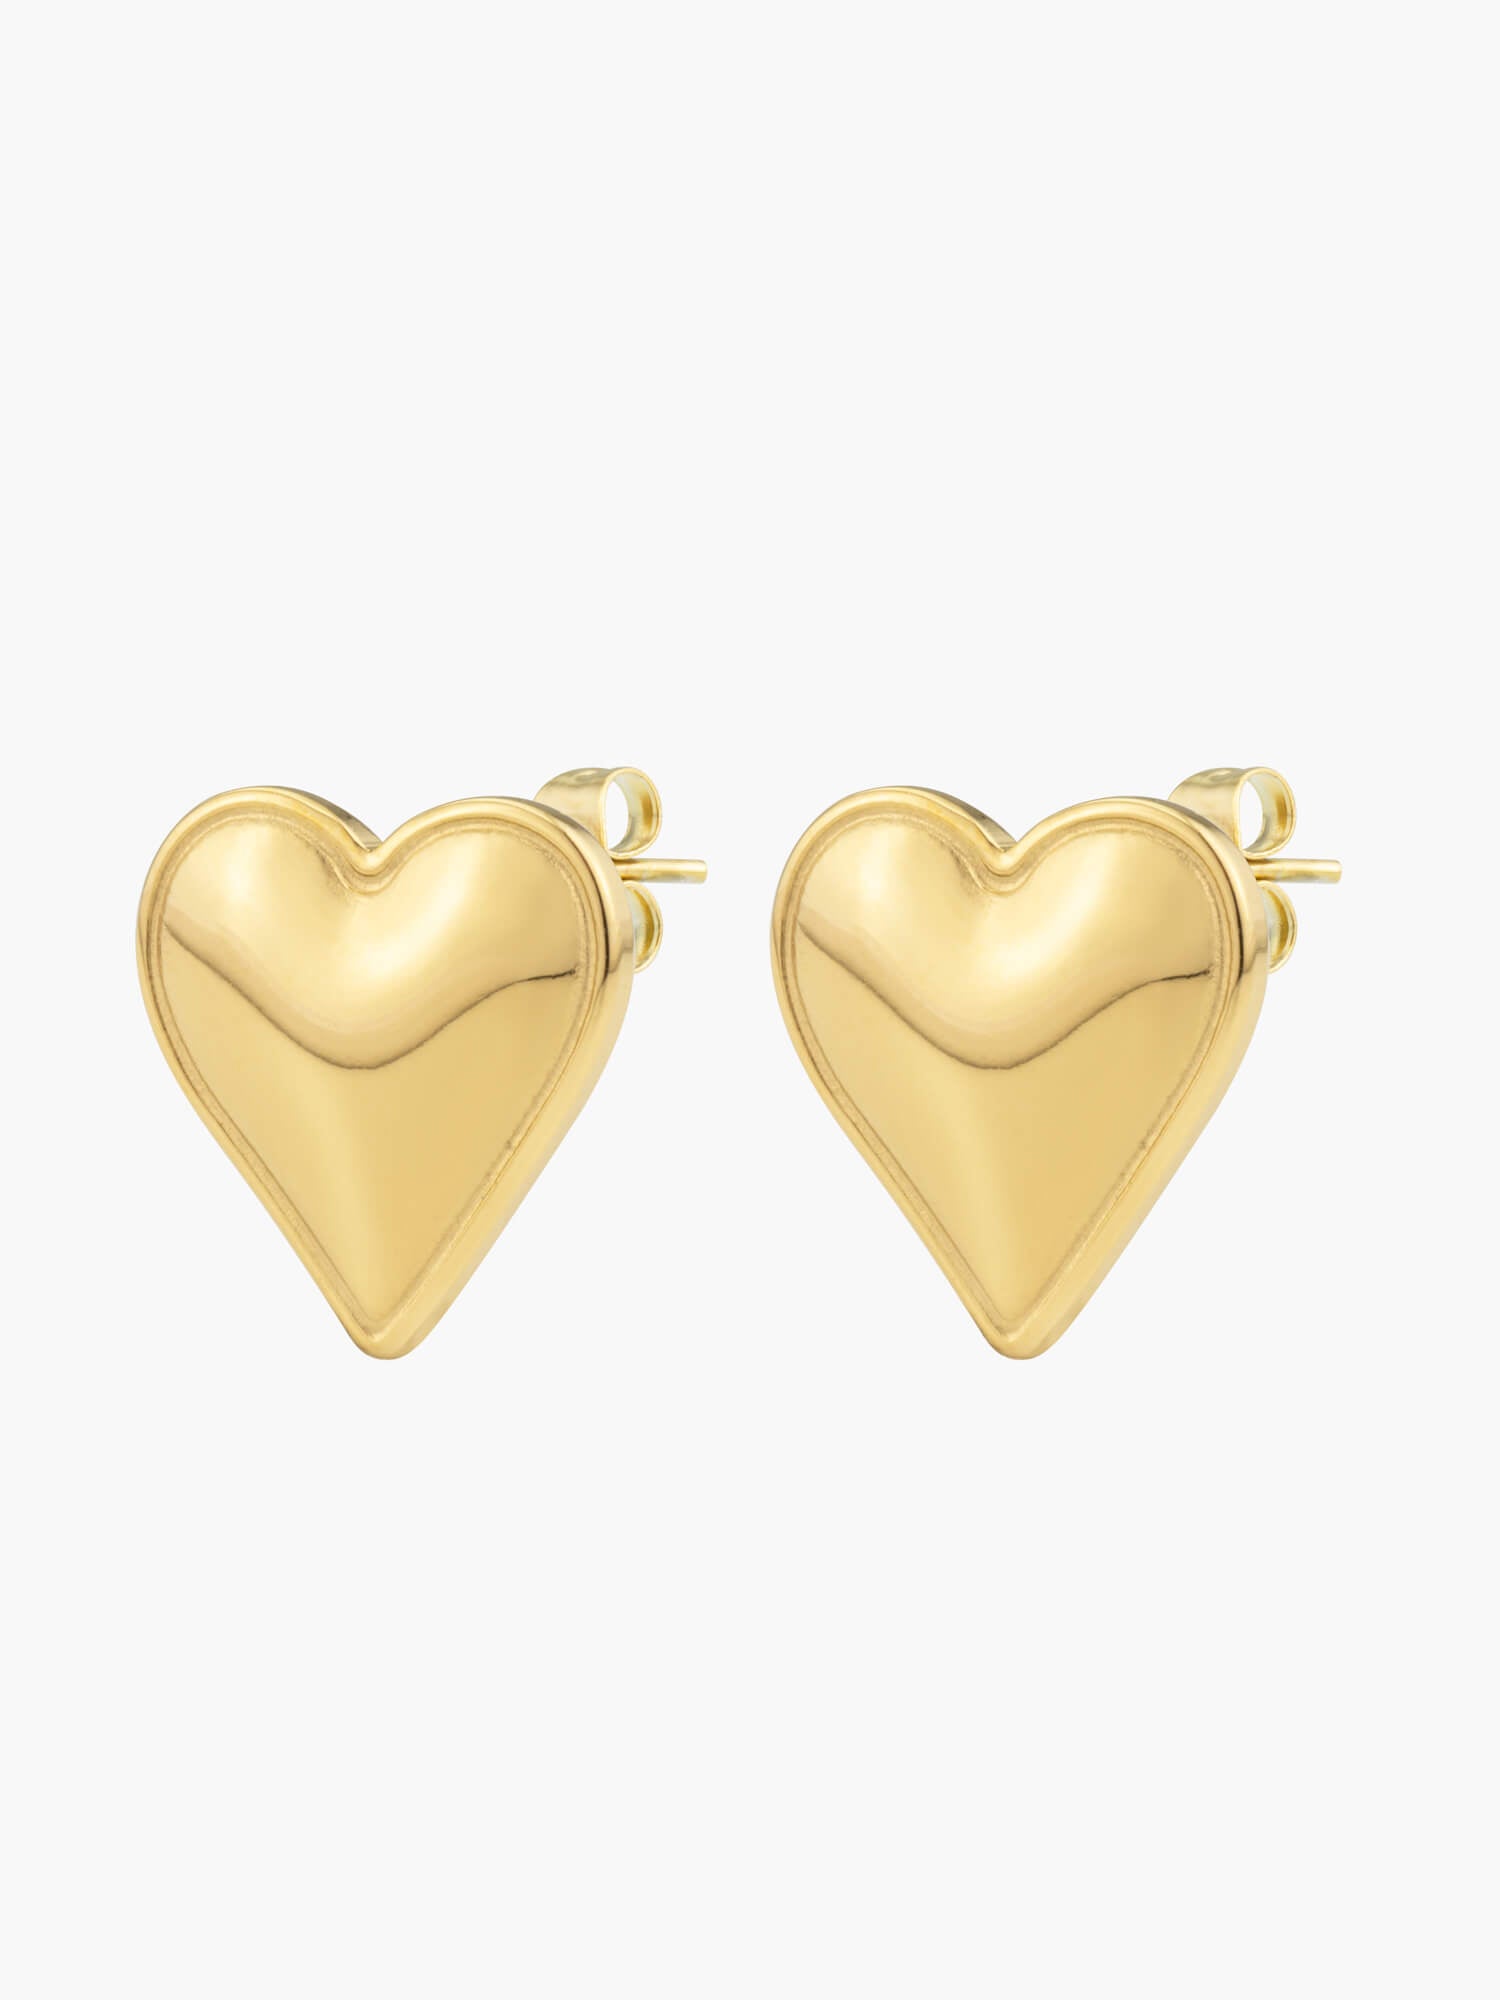 Gold Love Heart Earrings